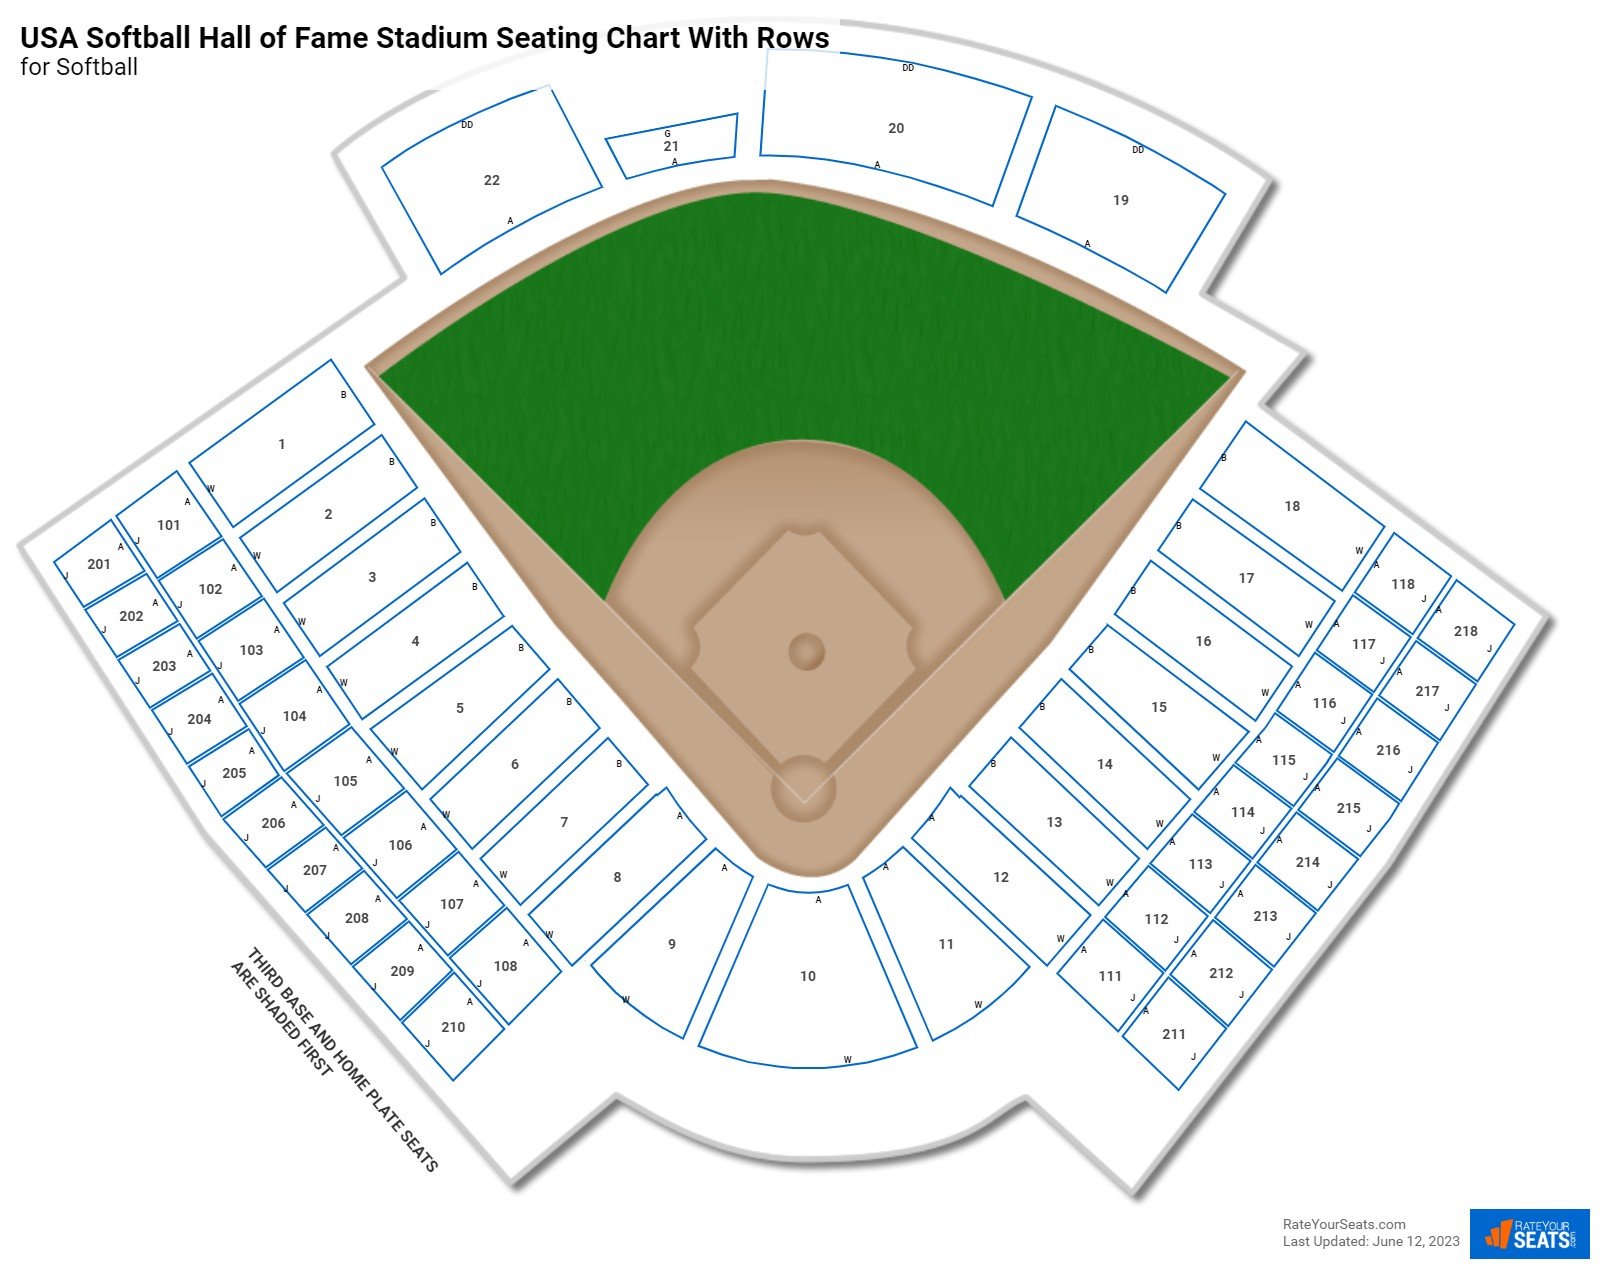 USA Softball Hall of Fame Stadium seating chart with row numbers